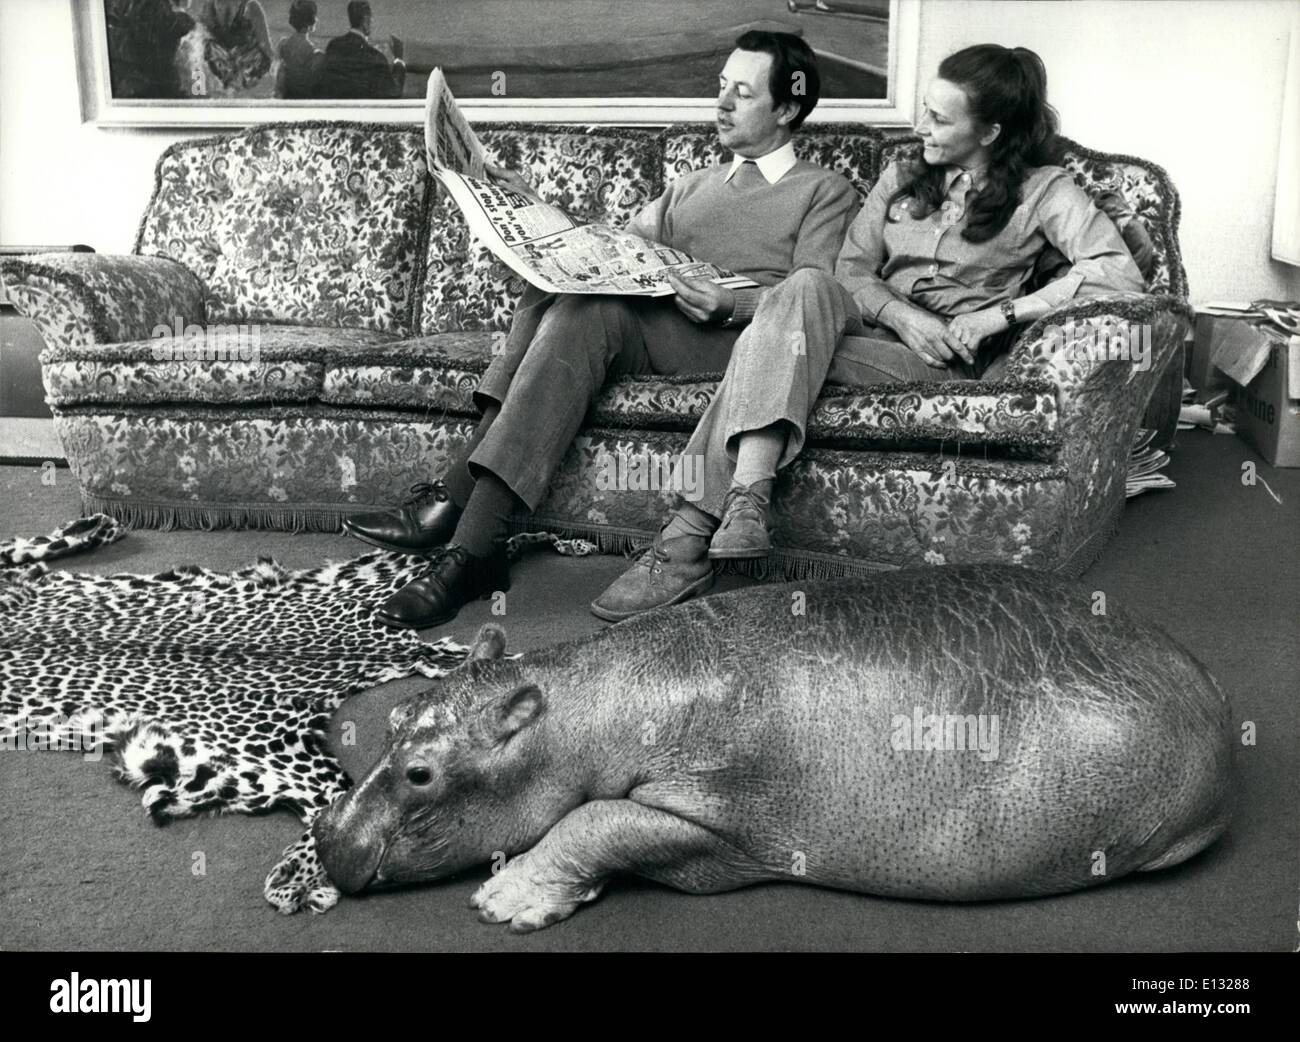 Le 26 février 2012 - Un hippopotame sur le tapis. Certaines personnes aiment avoir un chien dans le foyer-tapis tandis que d'autres préfèrent un chat, mais la famille Cawley ont un hippopotame, pas par choix, mais parce que Mary Chipperfield (de la célèbre famille de cirque) et son mari Roger Cawley gérer l'animal article de Longleat, le Wiltshire accueil du Marquis de Bath, ESME, l'hippo juste erre dans le salon pour une sieste. Banque D'Images